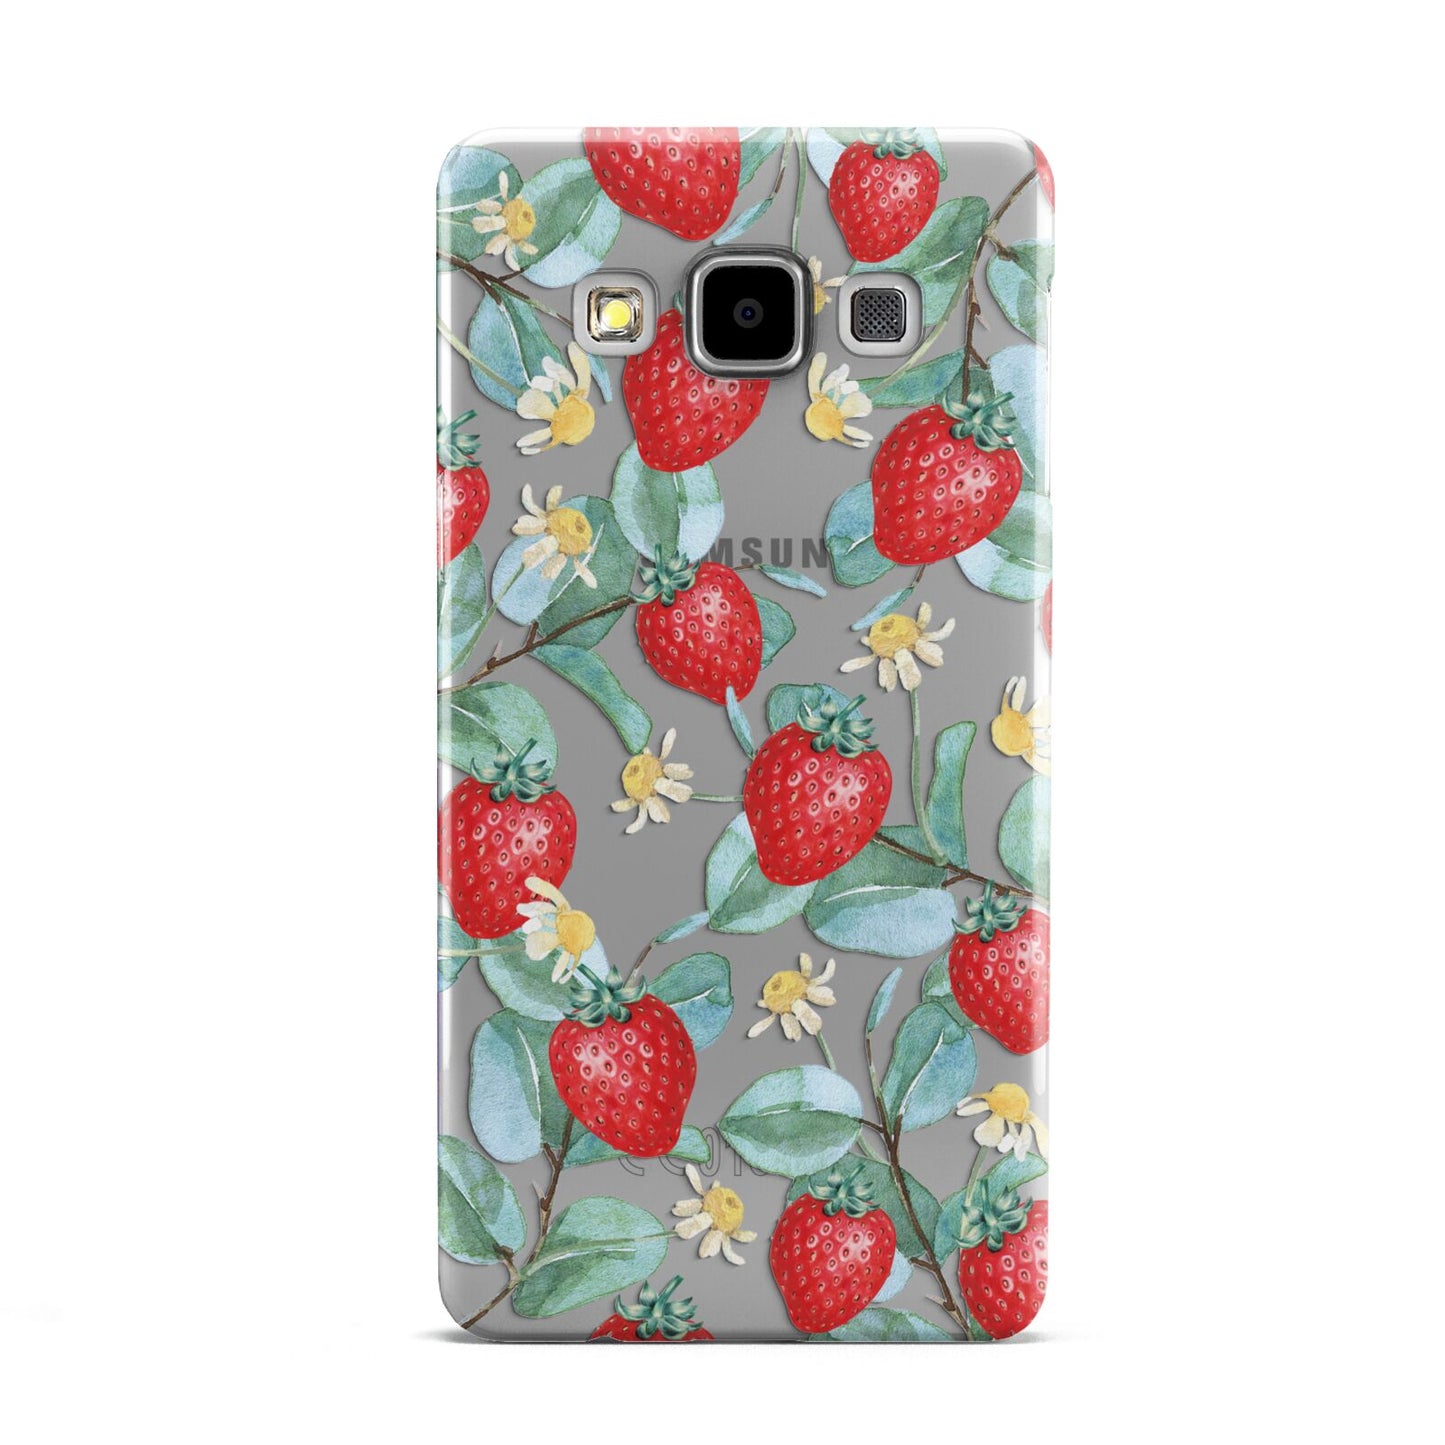 Strawberry Plant Samsung Galaxy A5 Case